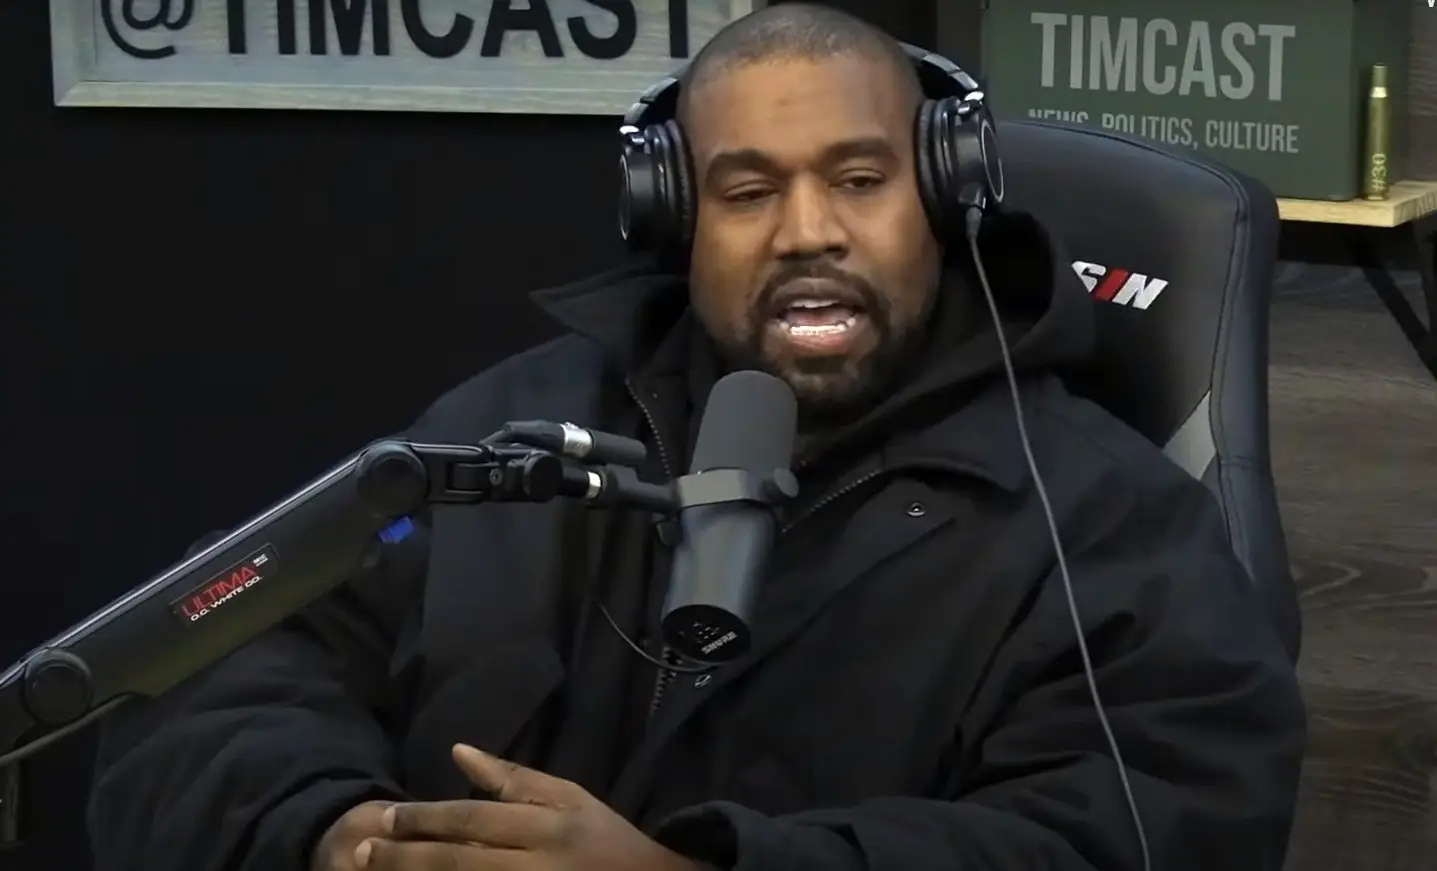 “Toda a gente sabe o que me aconteceu”: Kanye West abandona entrevista a meio